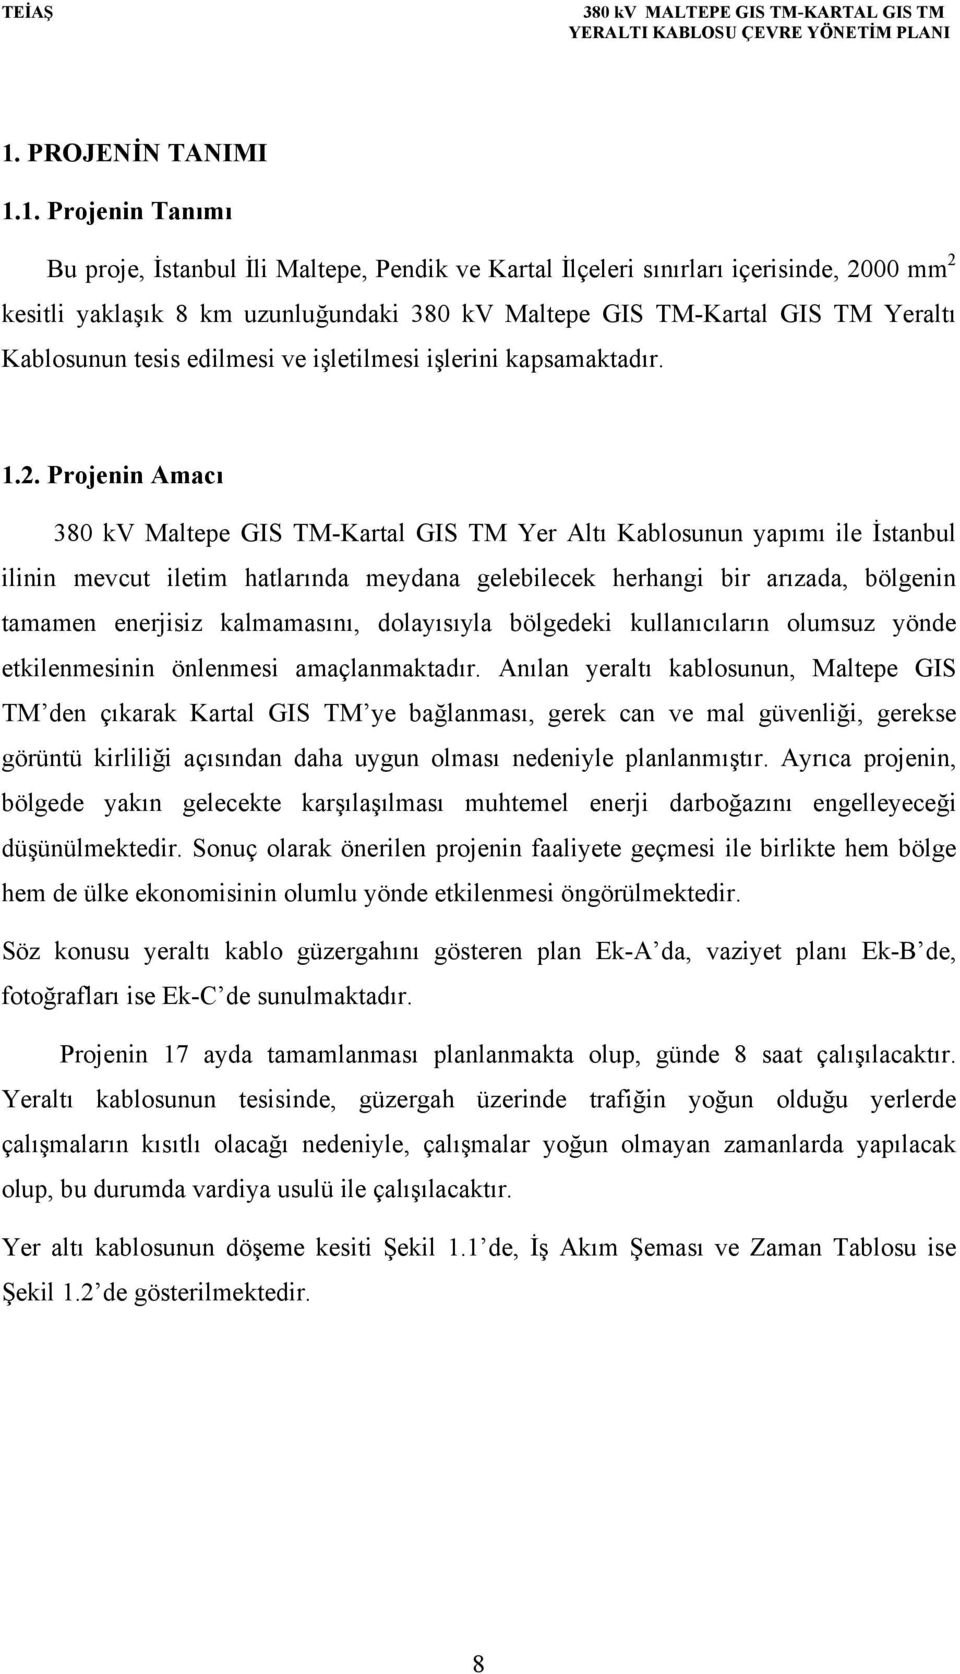 Projenin Amacı 380 kv Maltepe GIS TM-Kartal GIS TM Yer Altı Kablosunun yapımı ile İstanbul ilinin mevcut iletim hatlarında meydana gelebilecek herhangi bir arızada, bölgenin tamamen enerjisiz